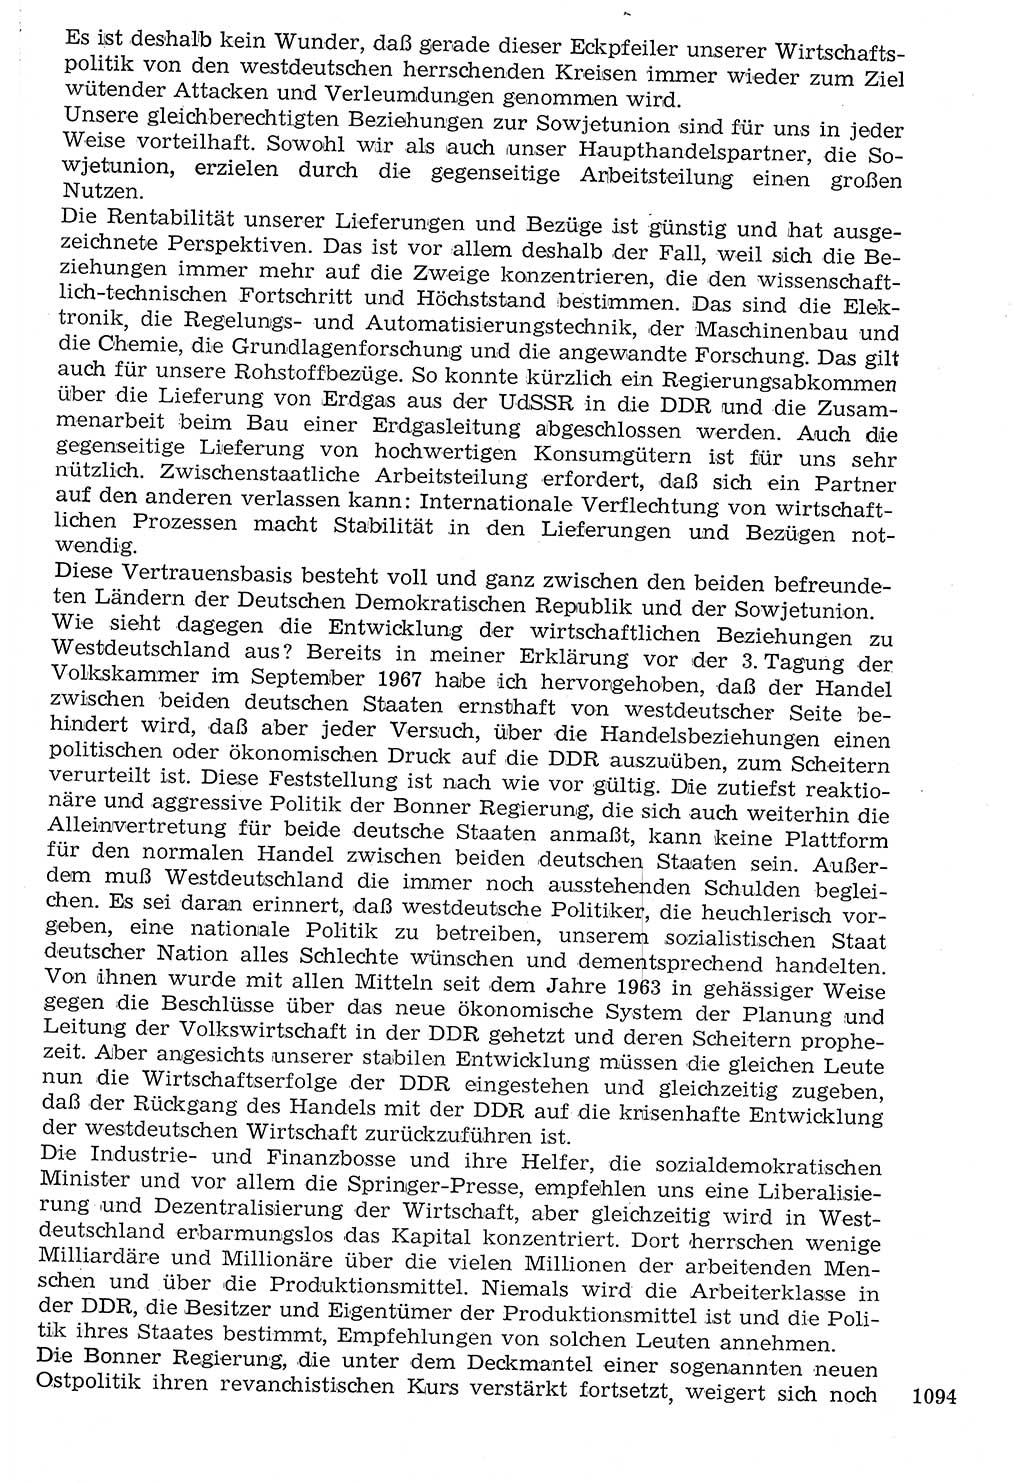 Staat und Recht (StuR), 17. Jahrgang [Deutsche Demokratische Republik (DDR)] 1968, Seite 1094 (StuR DDR 1968, S. 1094)